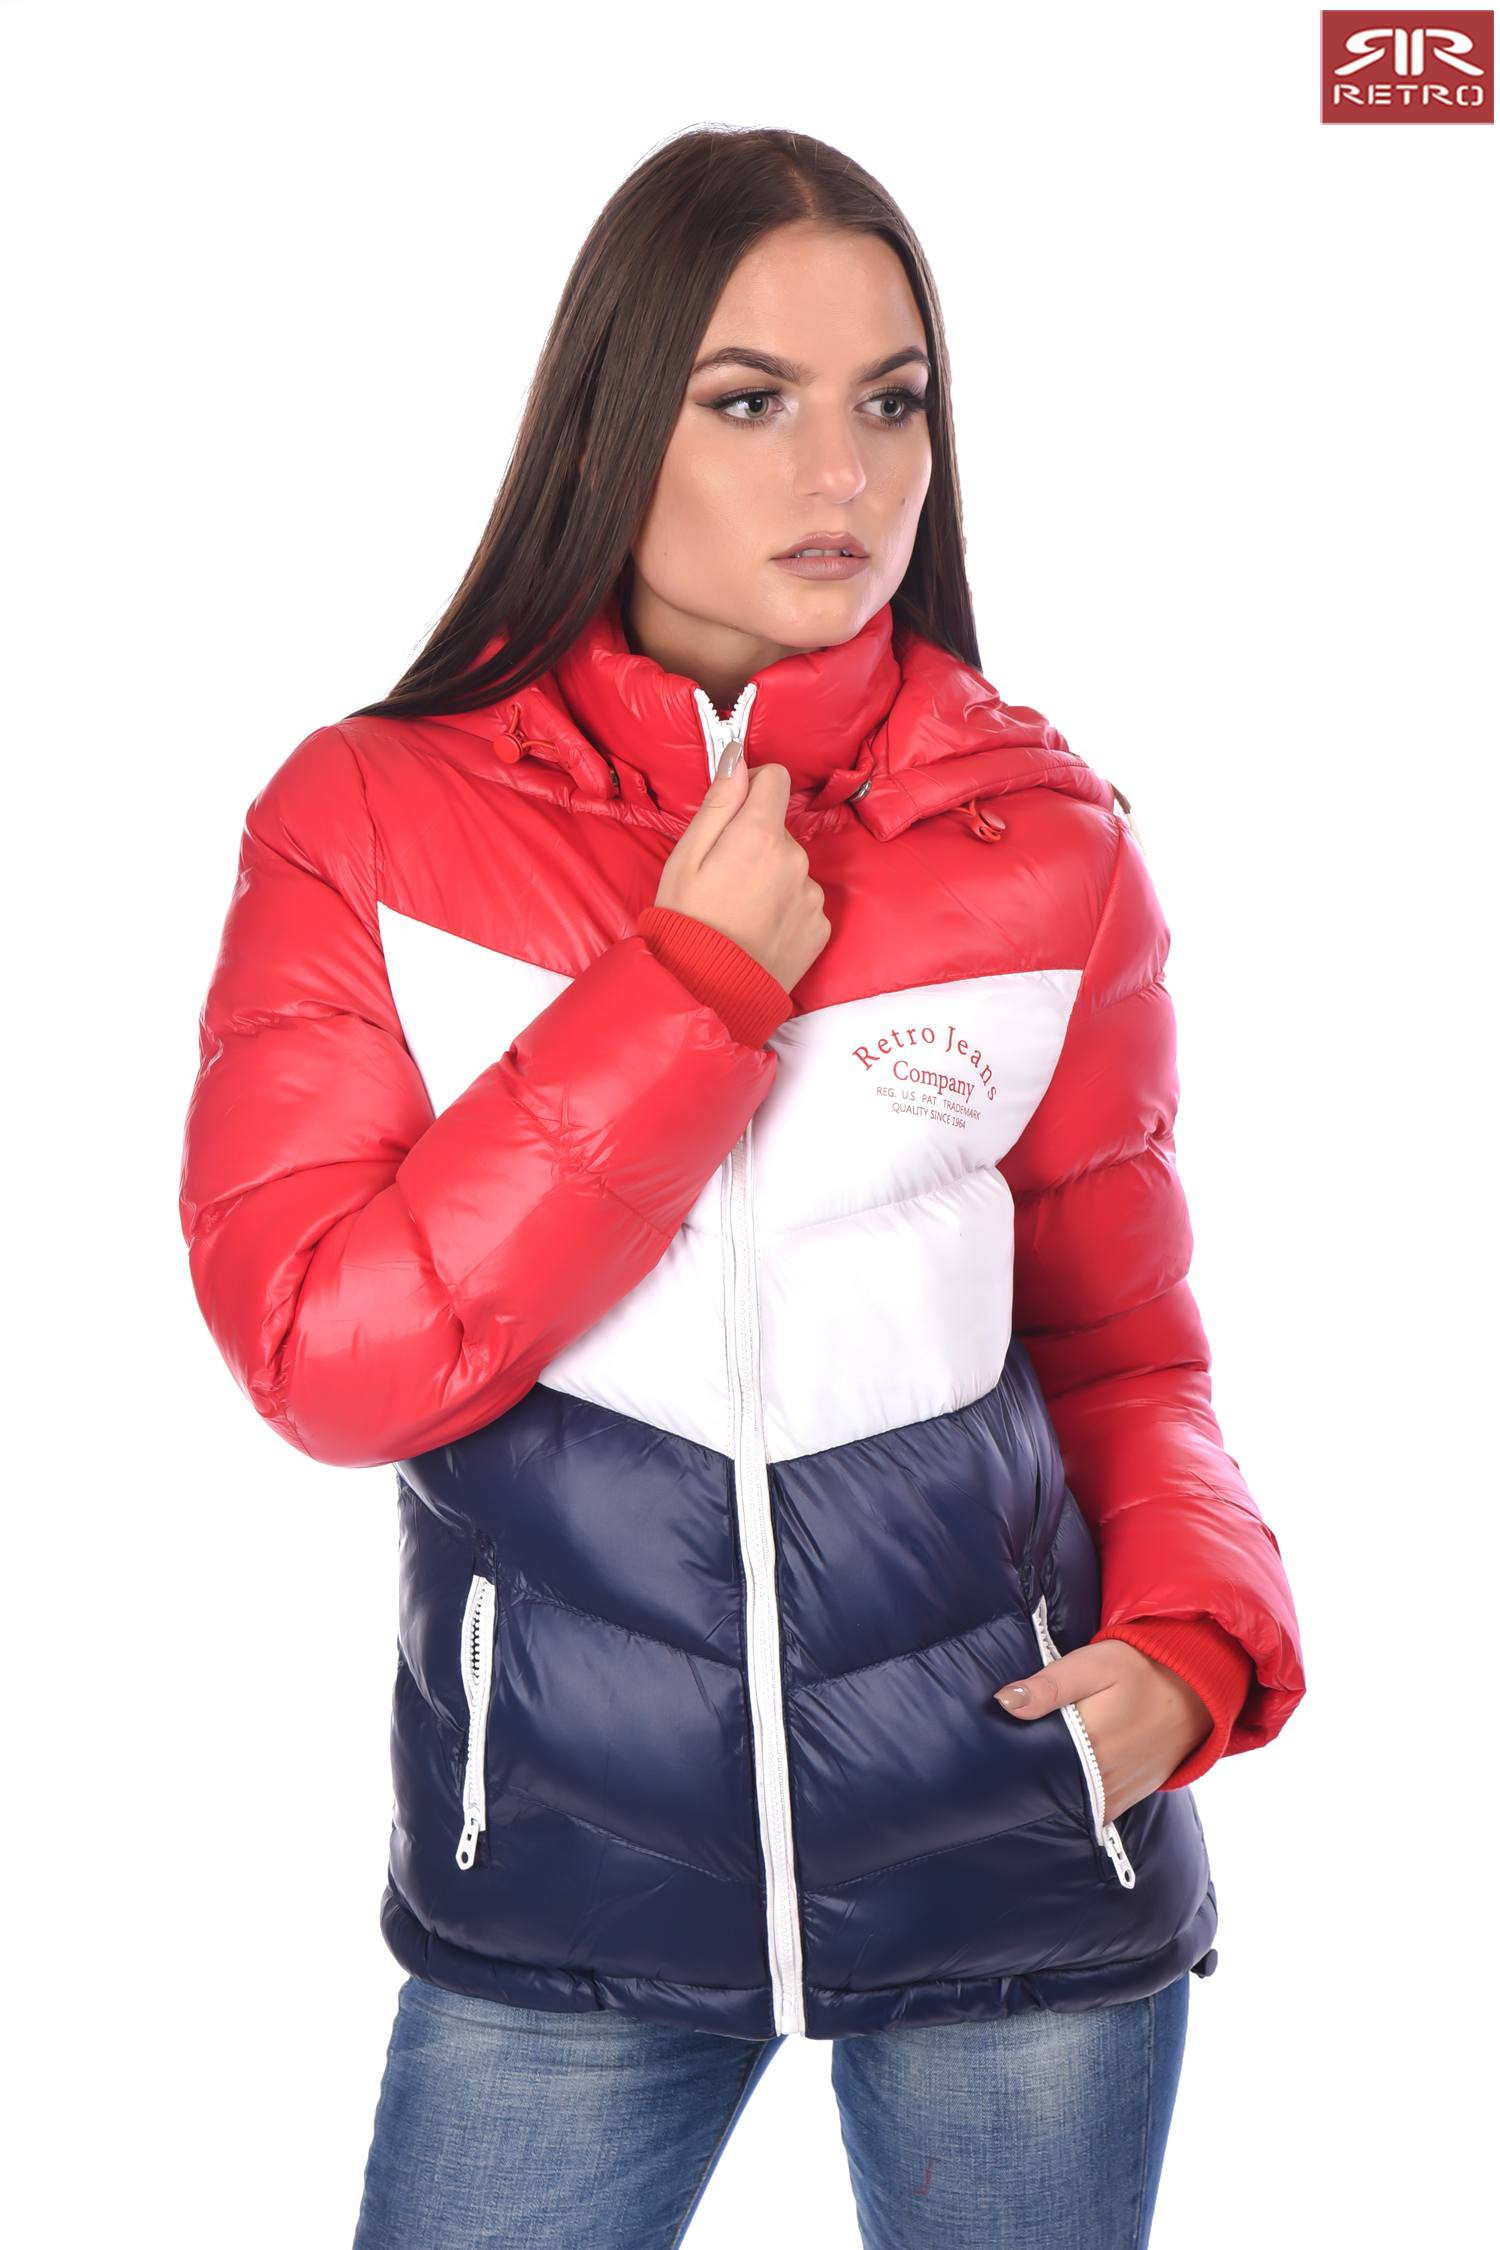 متواضع صبور فواكه خضر  رافعة عملة تغطية retro piros kabát női - marriottgrapevine.com